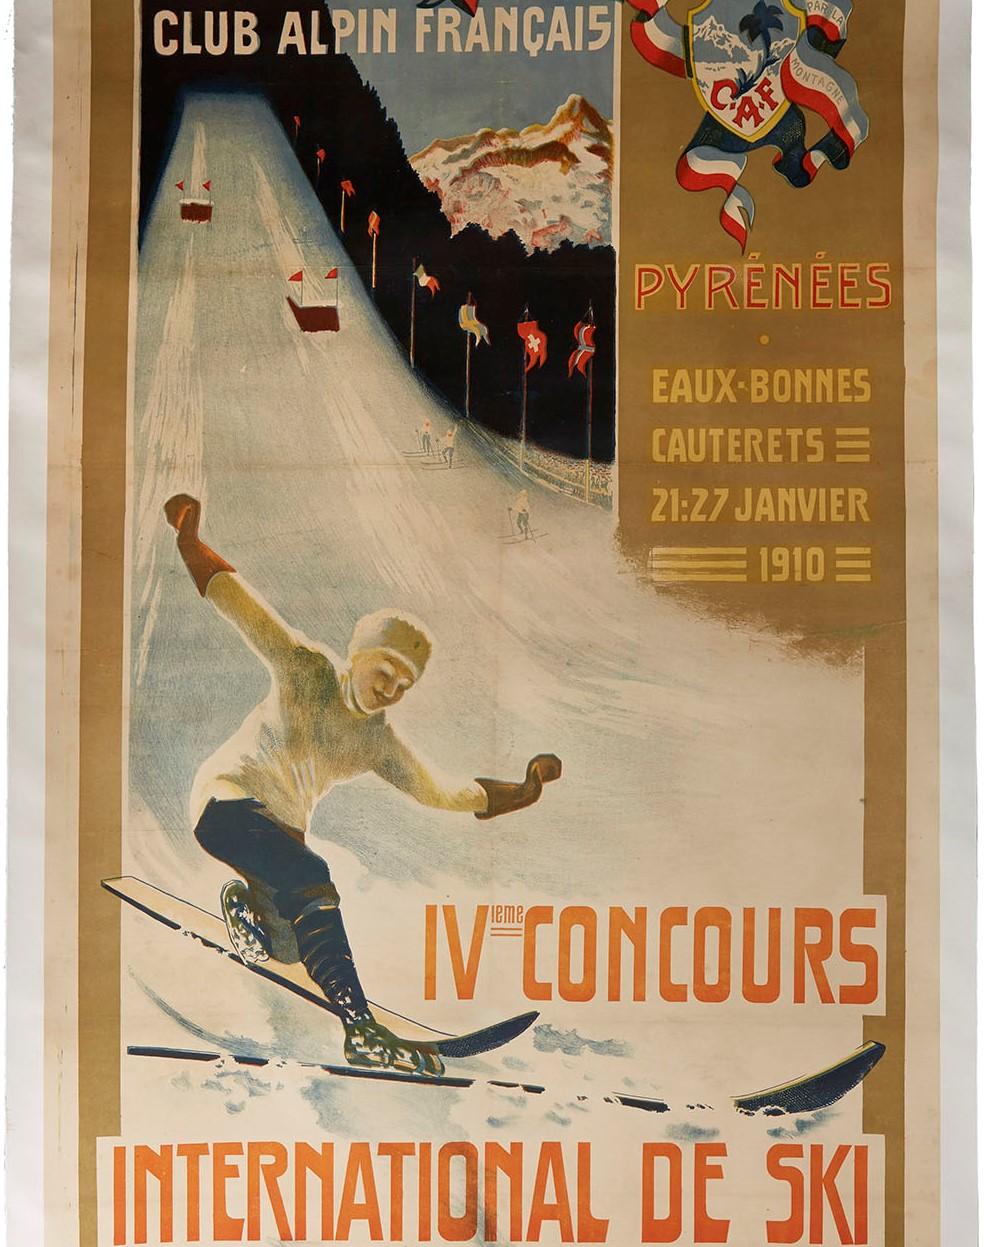 Affiche ancienne originale de sport d'hiver pour la 4ème compétition internationale de ski organisée par le Club Alpin Français (CAF ; fondée en 1874) et qui s'est déroulée du 21 au 27 janvier 1910 dans les stations pyrénéennes des Eaux Bonnes et de